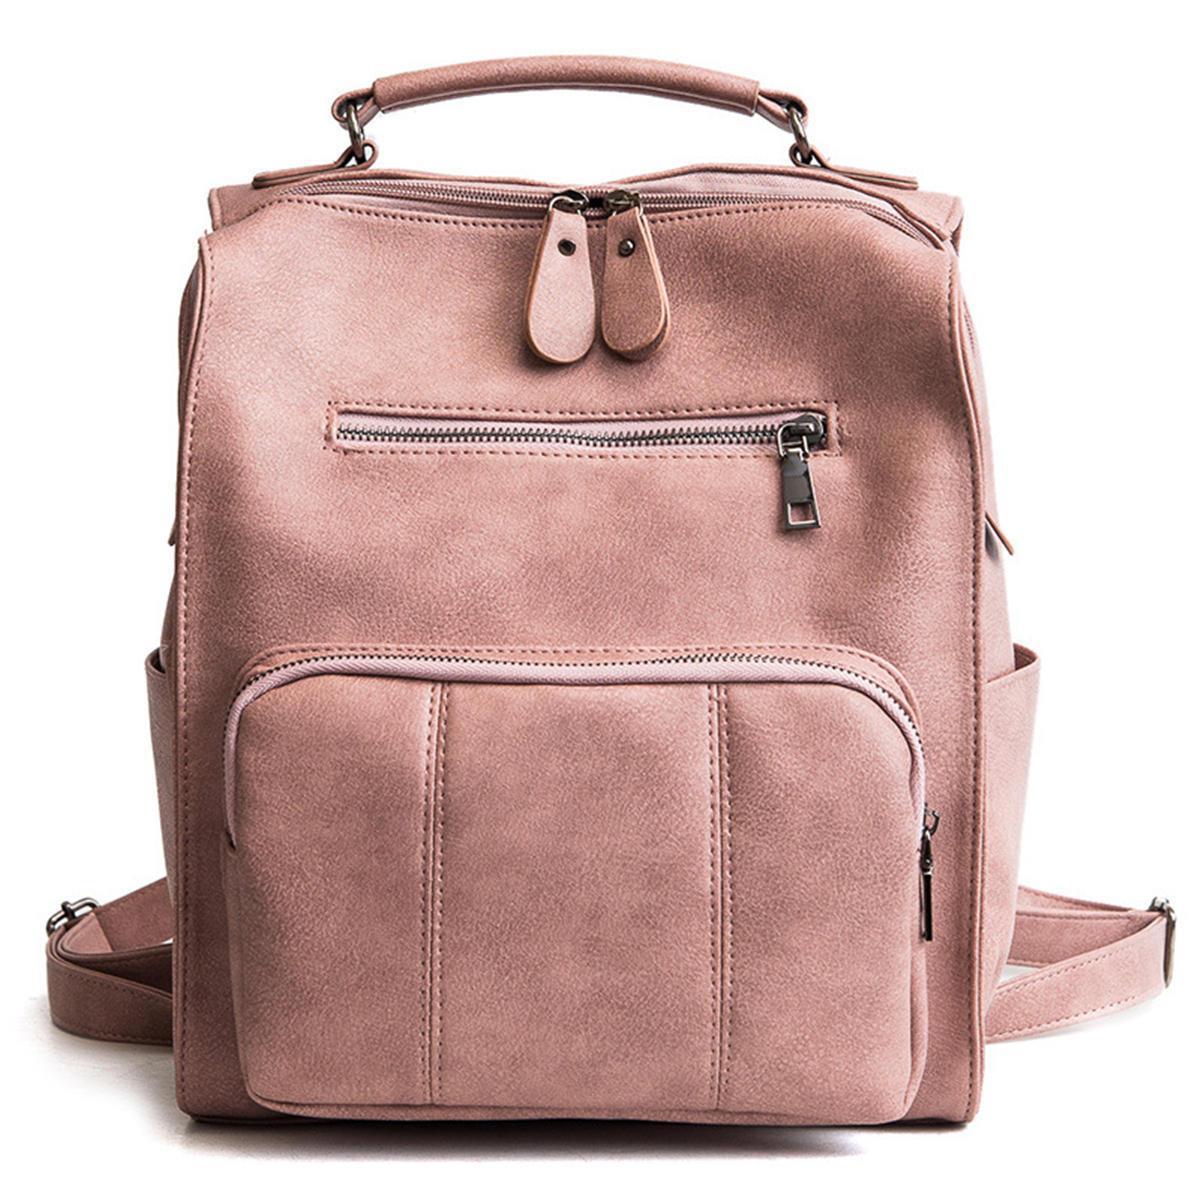 Vintage Backpack PU Leather Student School Bag Handbag Shoulder Bag Travel Rucksack Camping PINK